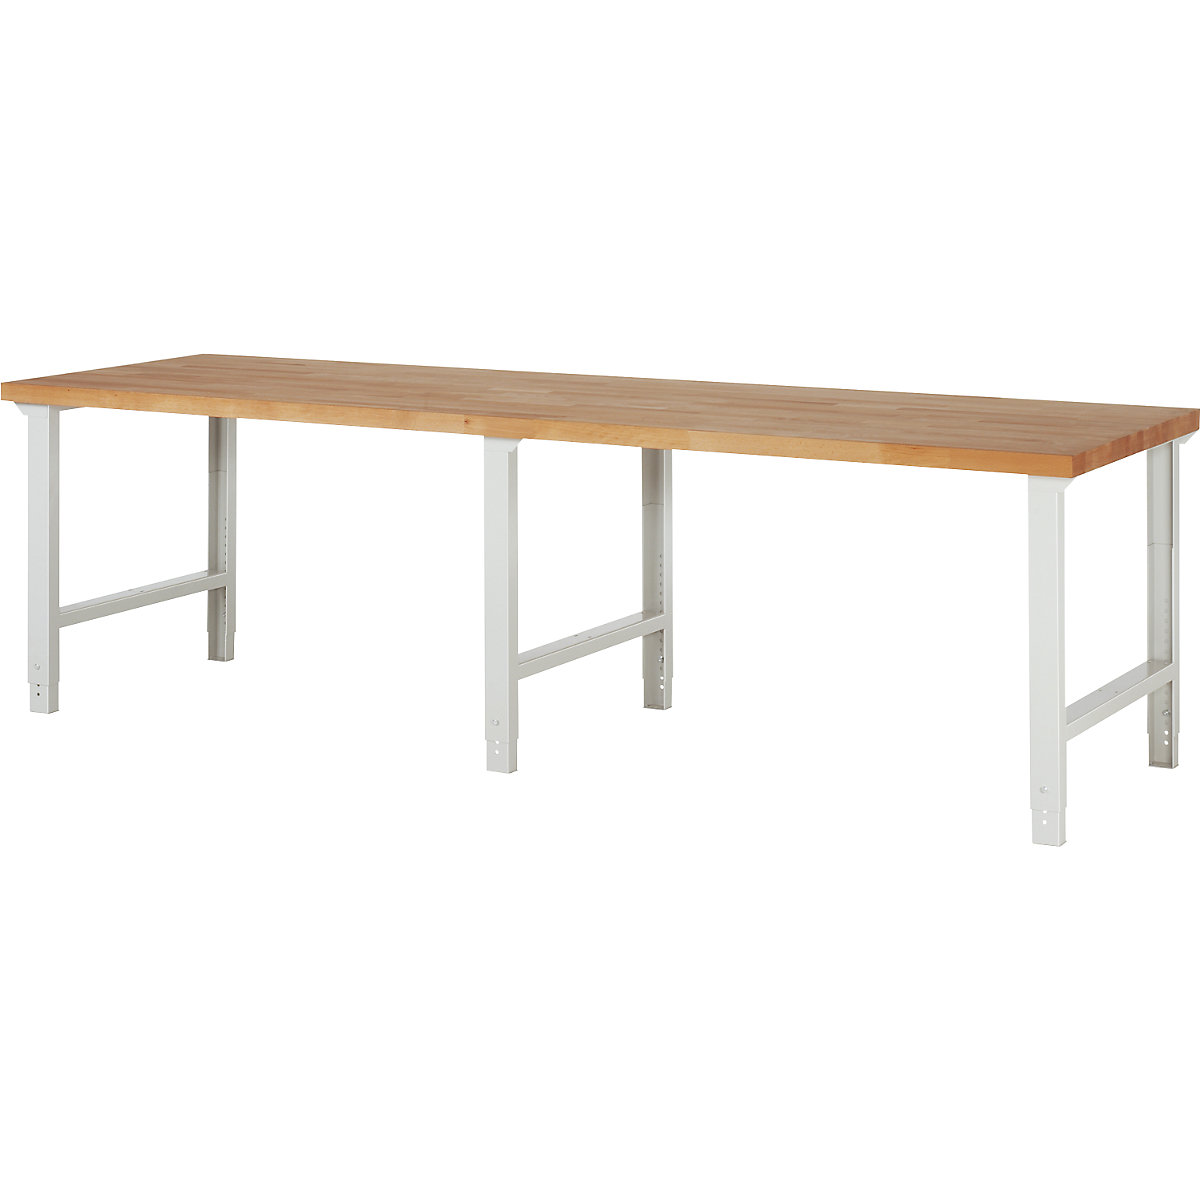 EUROKRAFTpro – Modulna delovna miza, brez spodnjih elementov, zelo široka izvedba, ŠxG 3000 x 900 mm